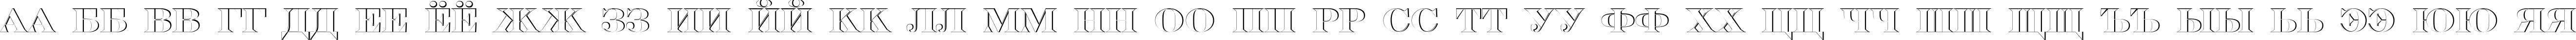 Пример написания русского алфавита шрифтом a_SeriferTitulSh